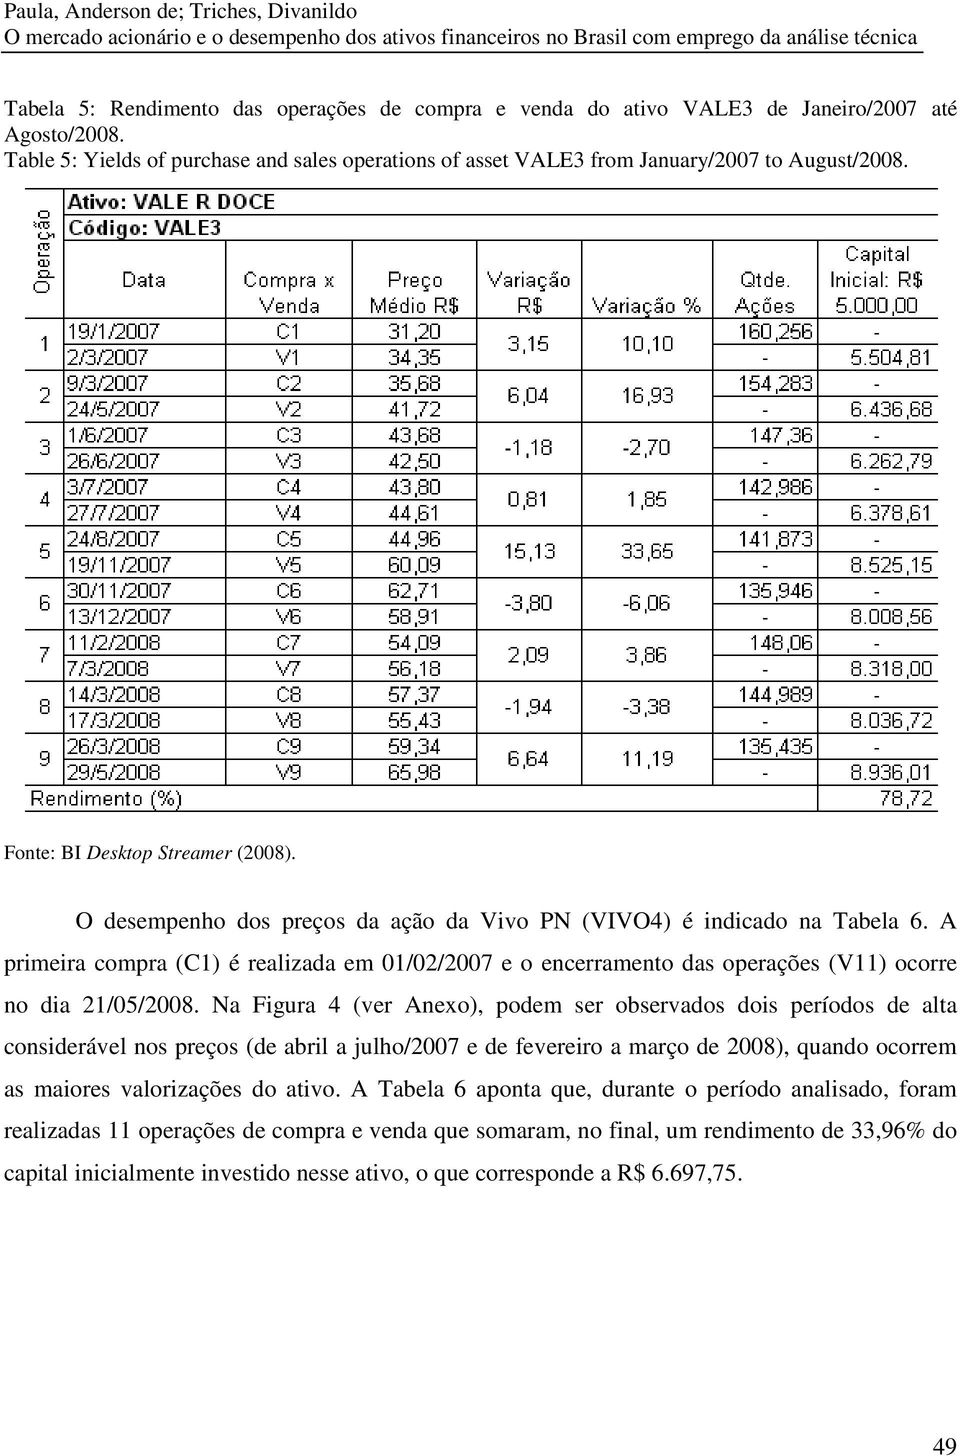 O desempenho dos preços da ação da Vivo PN (VIVO4) é indicado na Tabela 6. A primeira compra (C1) é realizada em 01/02/2007 e o encerramento das operações (V11) ocorre no dia 21/05/2008.